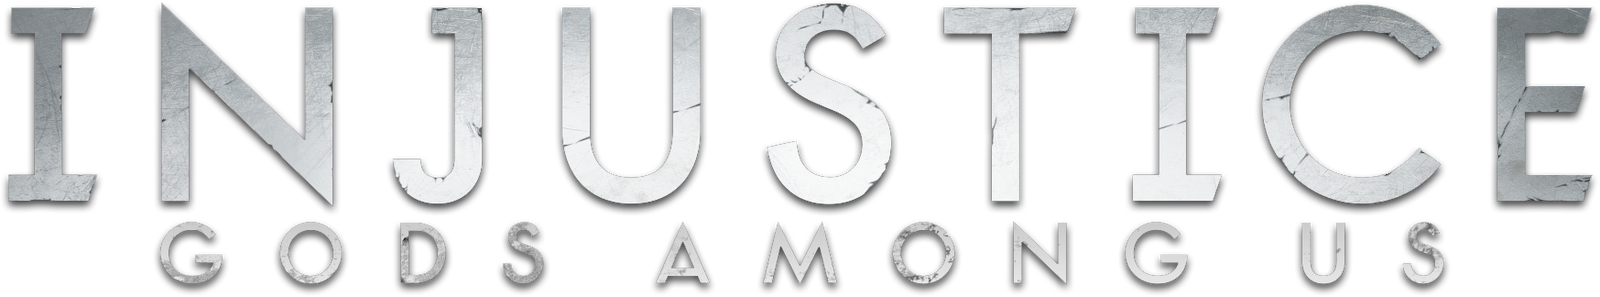 Injustice Gods Among Us logo.